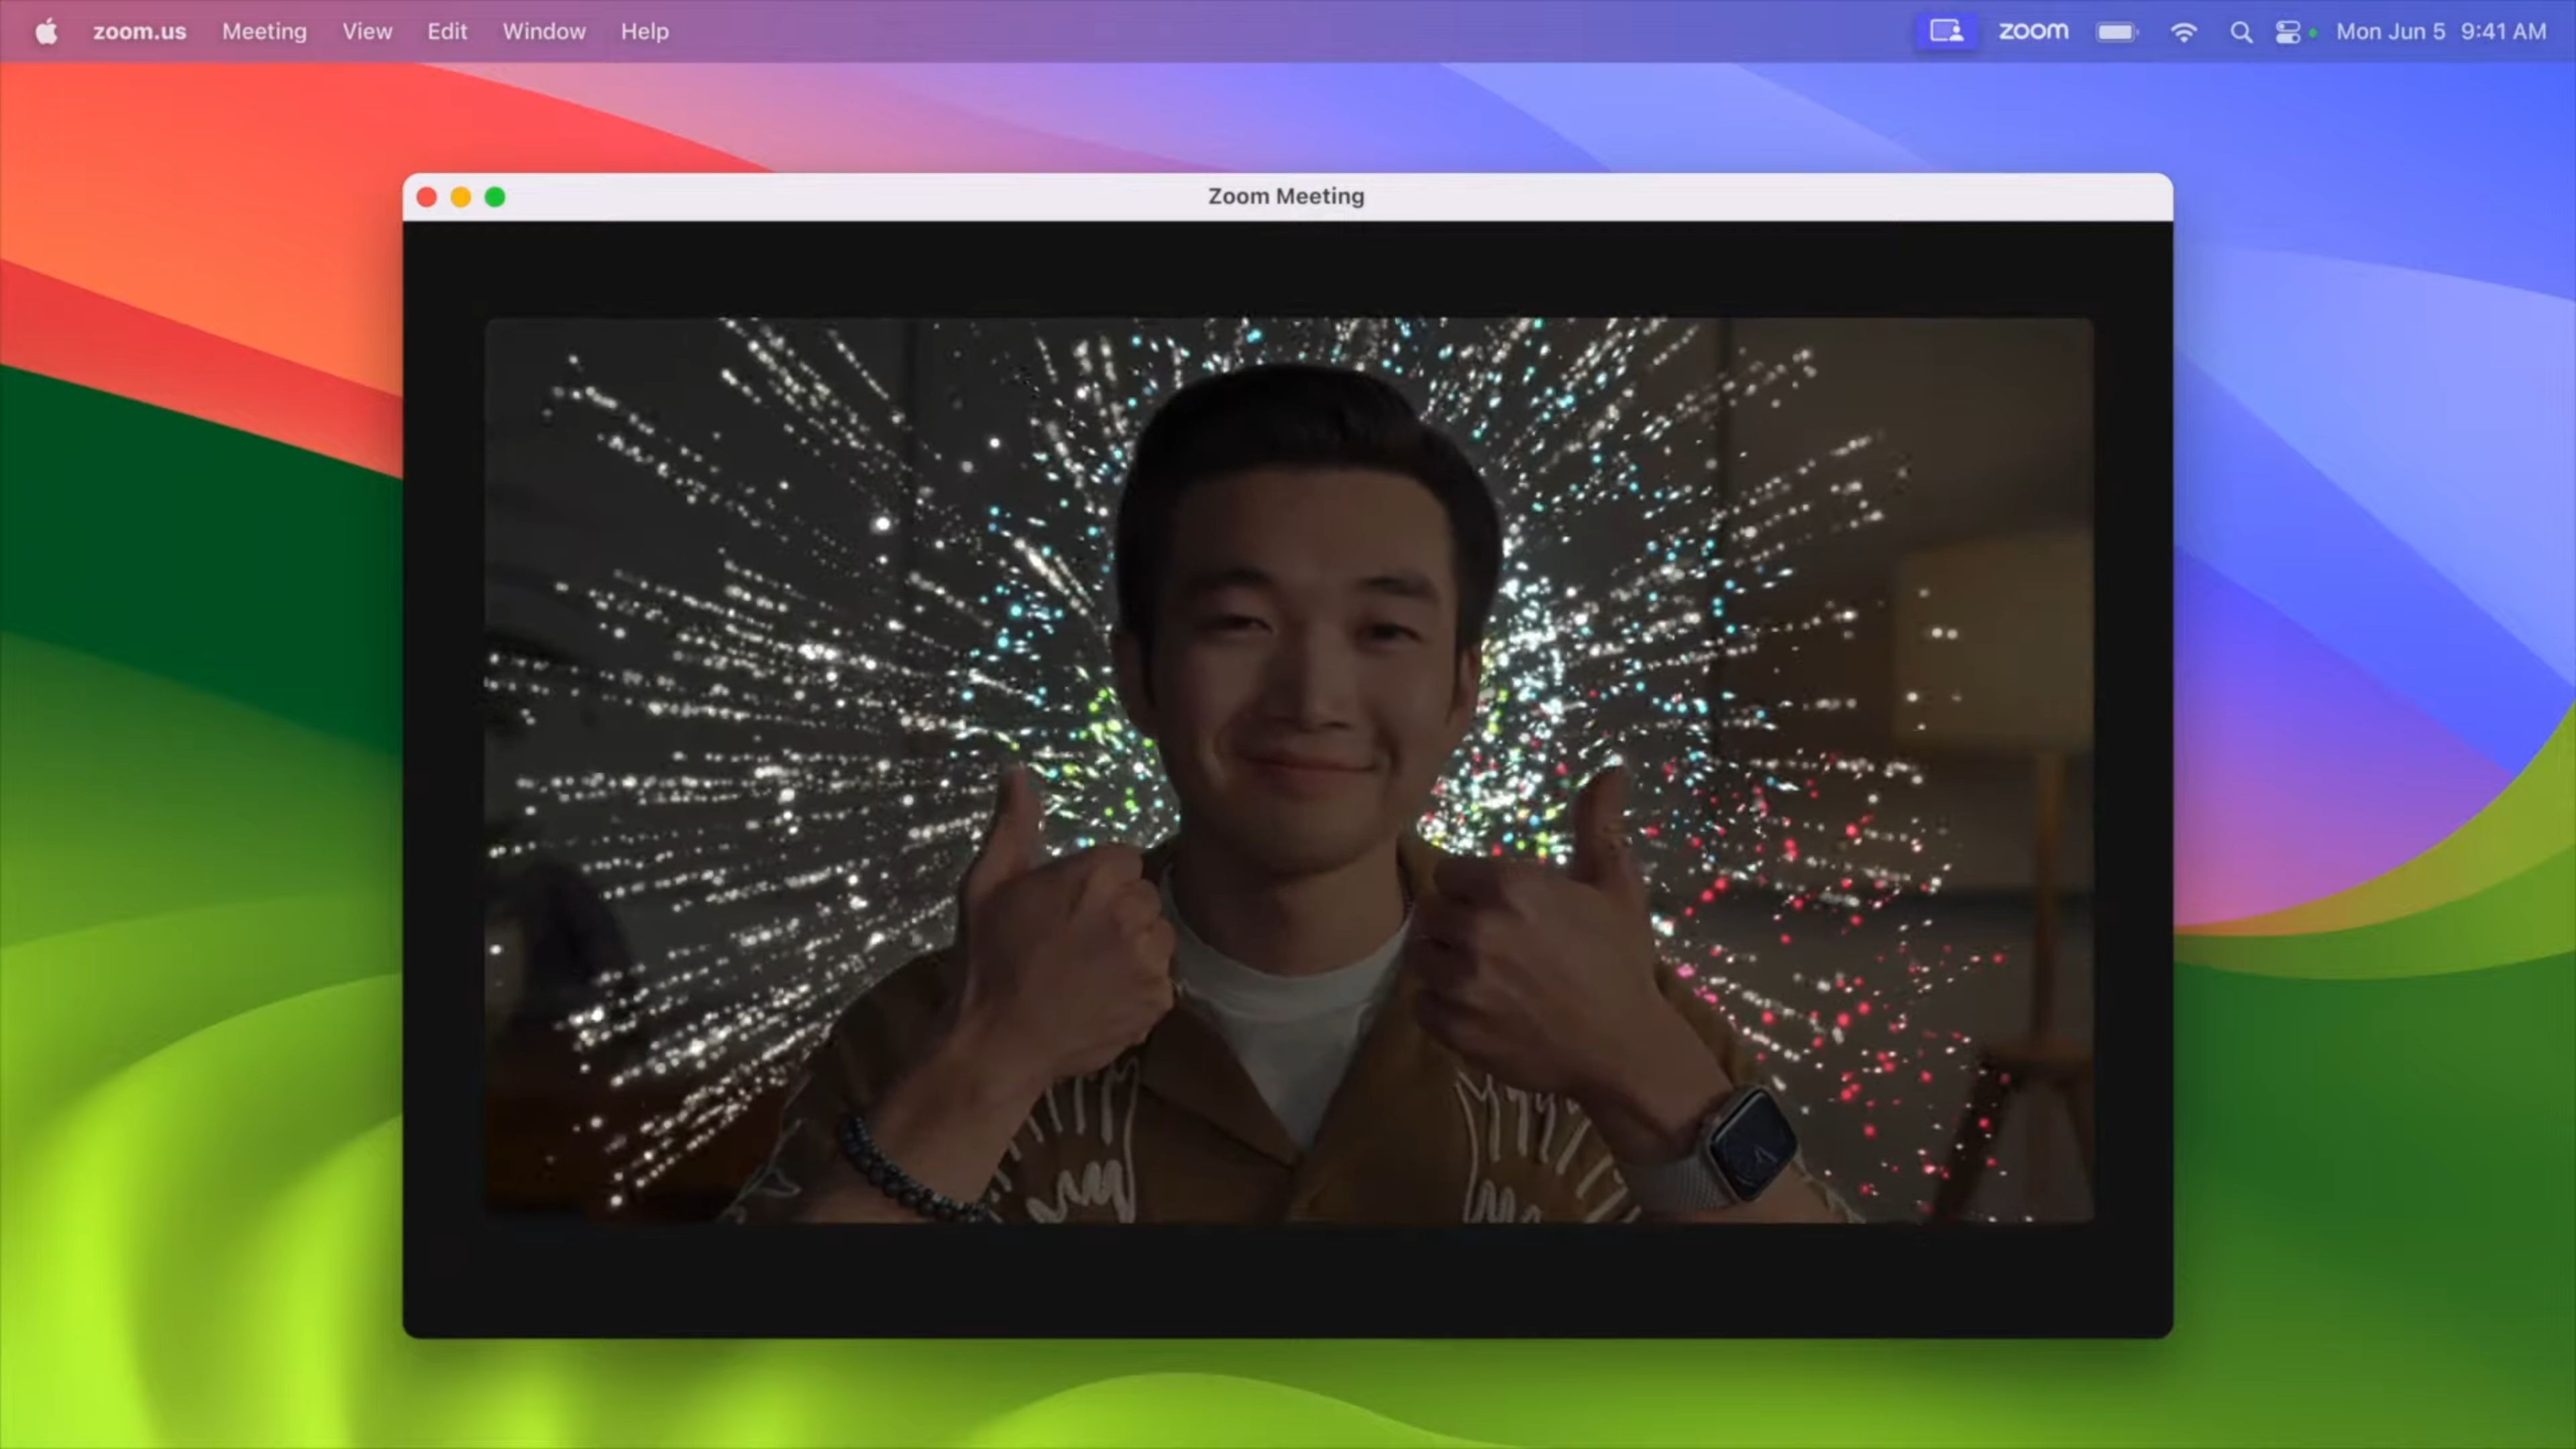 Screenshot von macOS Sonoma, das Feuerwerksanimationen anzeigt, wenn der Benutzer vor der Kamera eine Geste mit zwei Schlägen macht